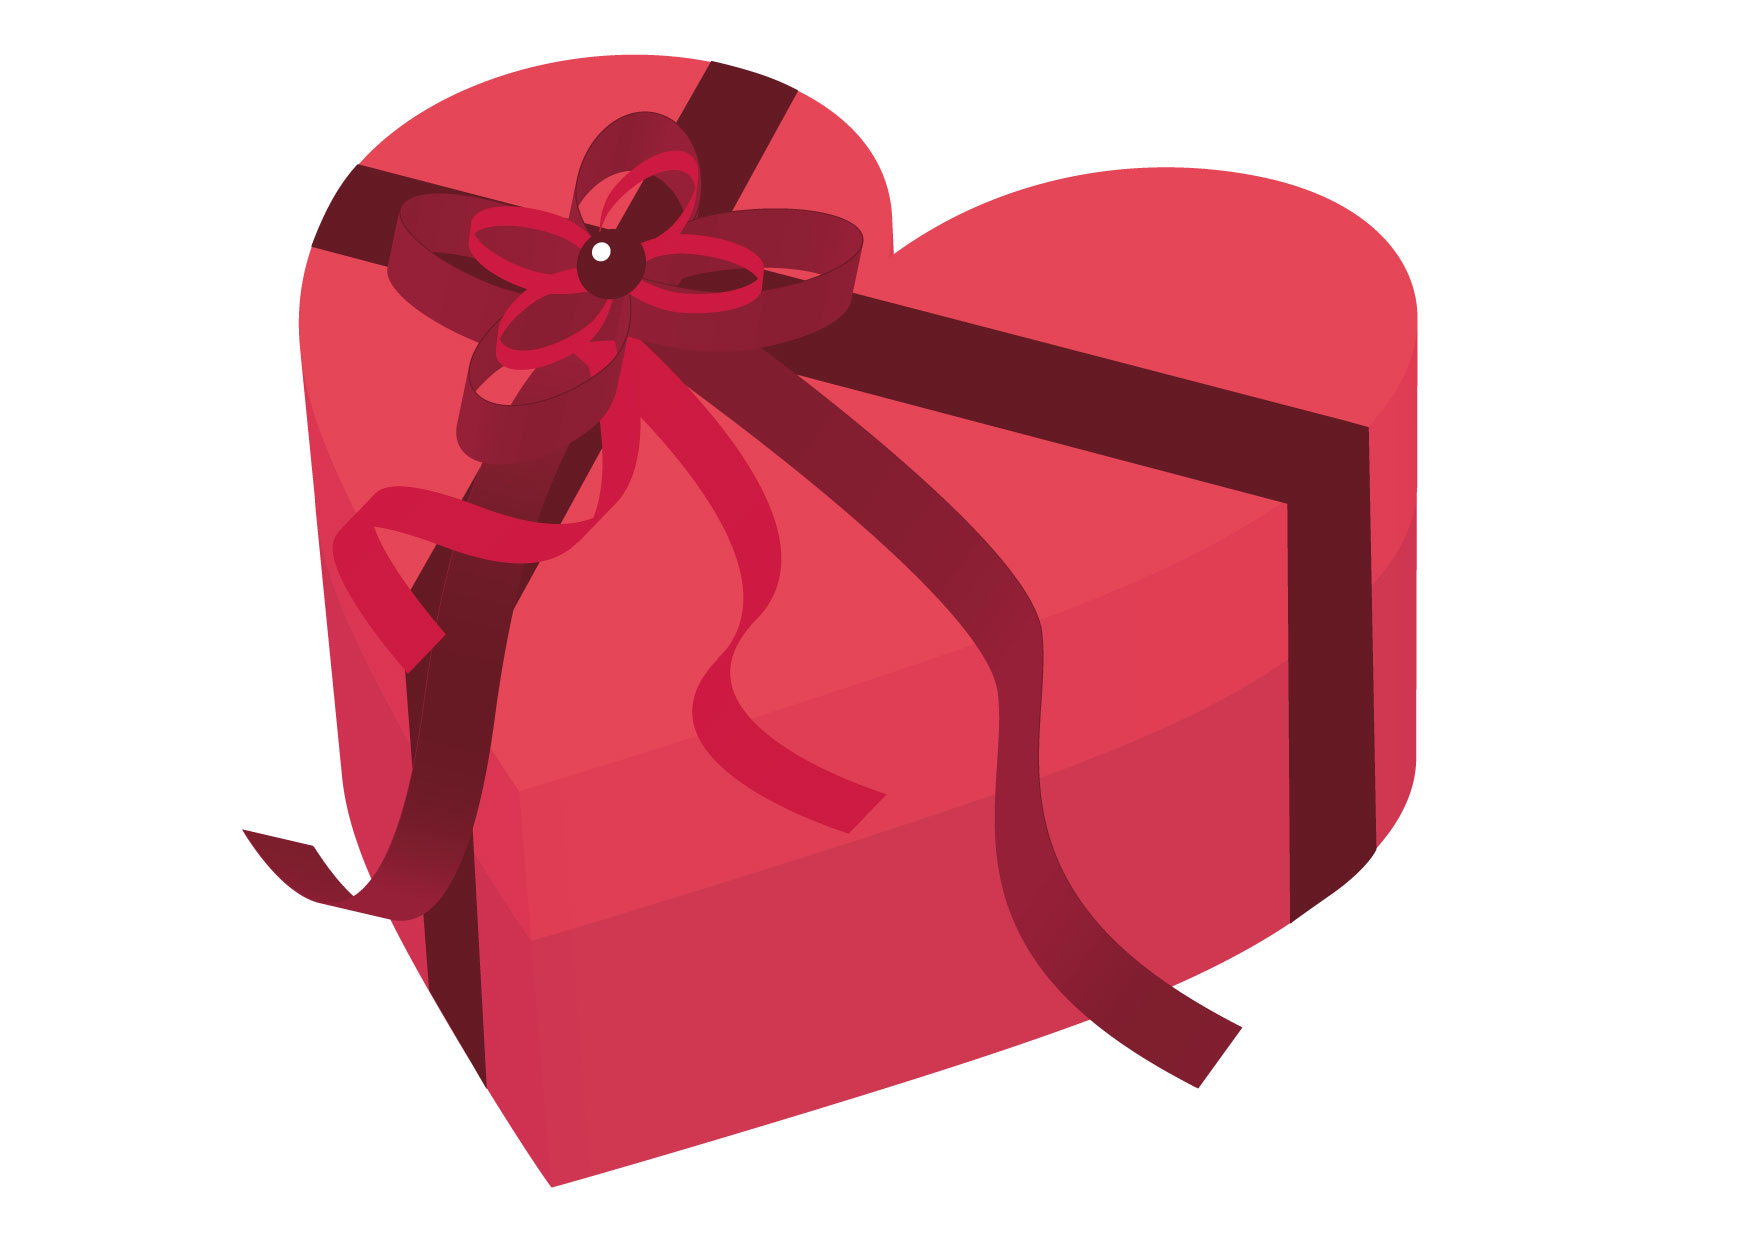 可愛いイラスト無料 バレンタイン ハート ピンク 箱 Free Illustration Valentine Heart Pink Box 公式 イラスト素材サイト イラストダウンロード